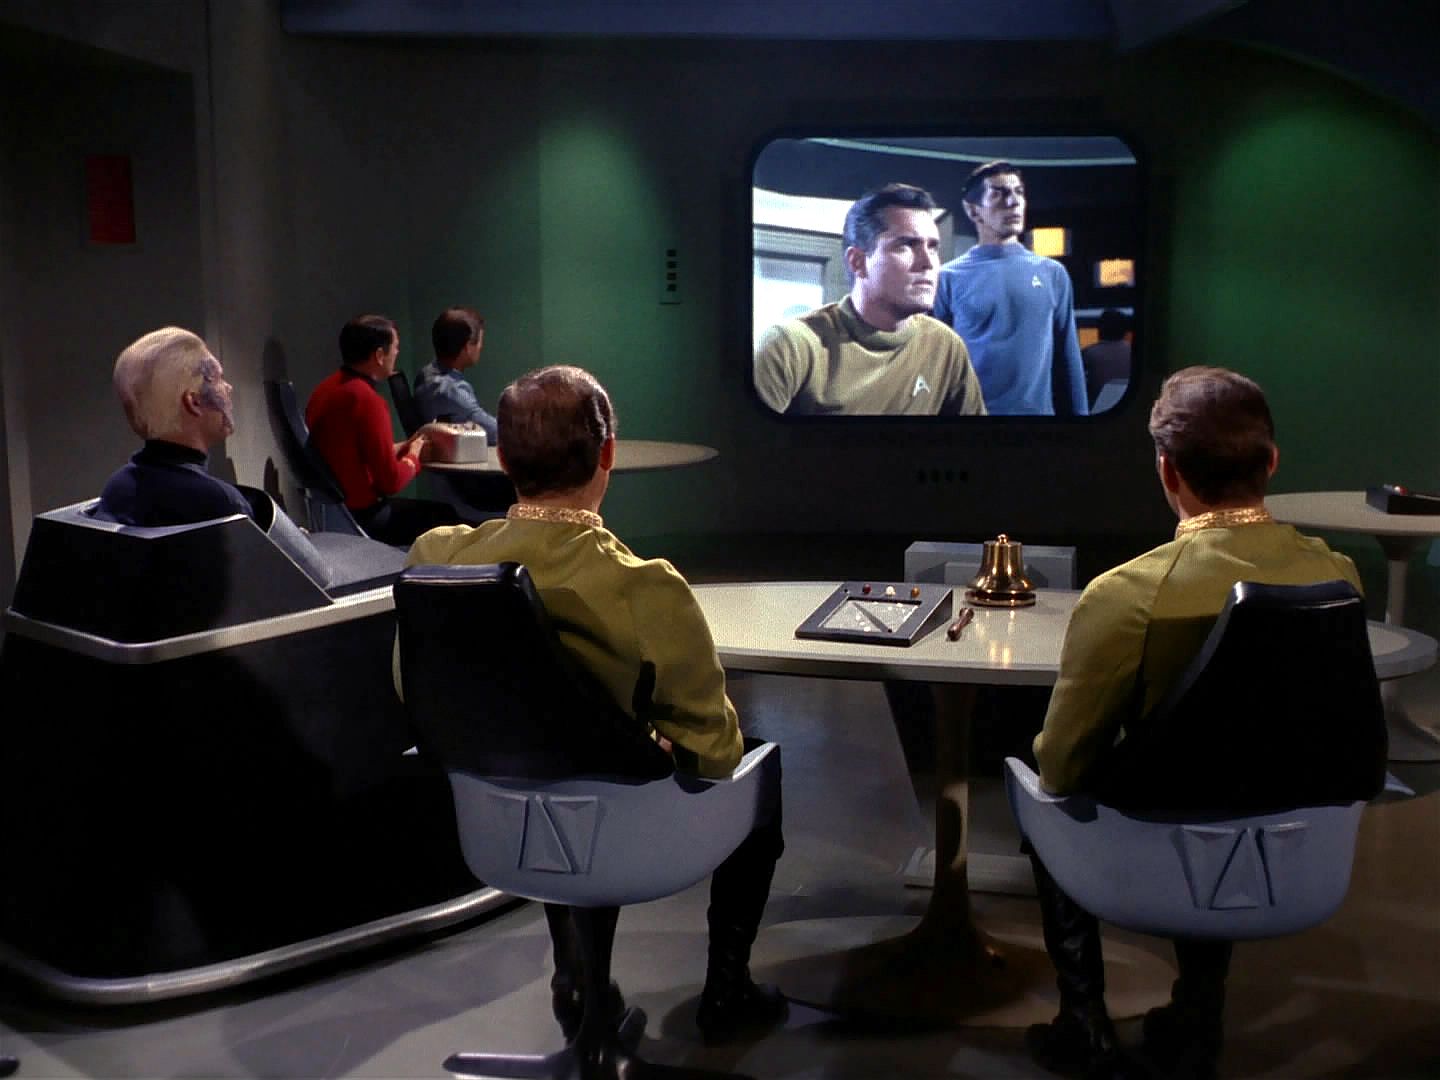 Spock šikovně zmanipuloval Mendeze, takže si od něj vyžádal obrazový záznam událostí z doby před 13 lety jako důkaz. Z neznámého zdroje soud sleduje, co se dělo na můstku…